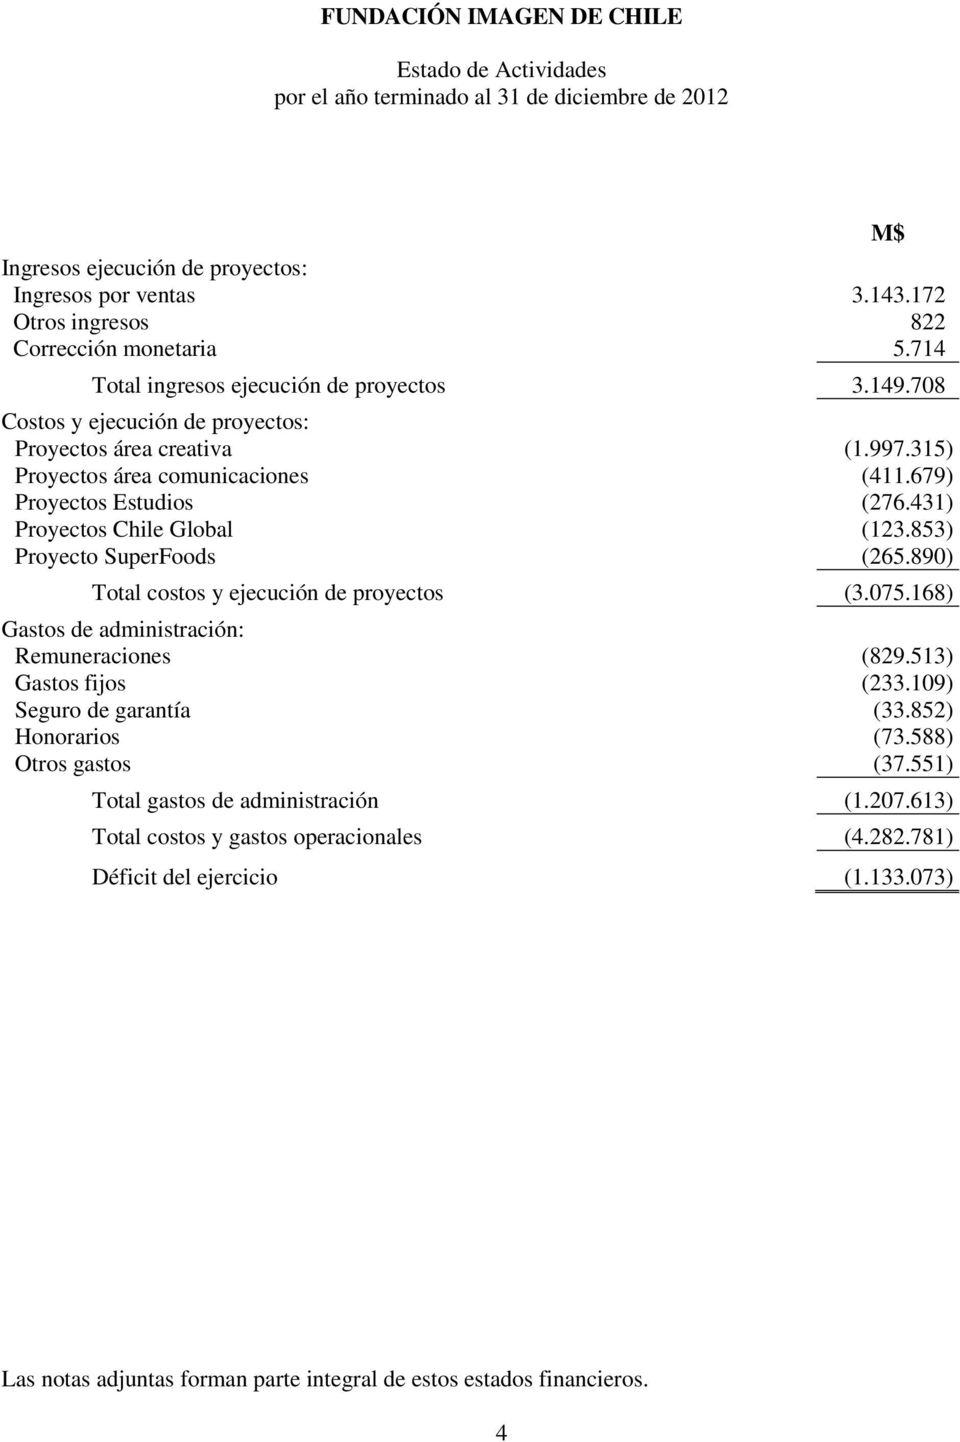 853) Proyecto SuperFoods (265.890) Total costos y ejecución de proyectos (3.075.168) Gastos de administración: Remuneraciones (829.513) Gastos fijos (233.109) Seguro de garantía (33.